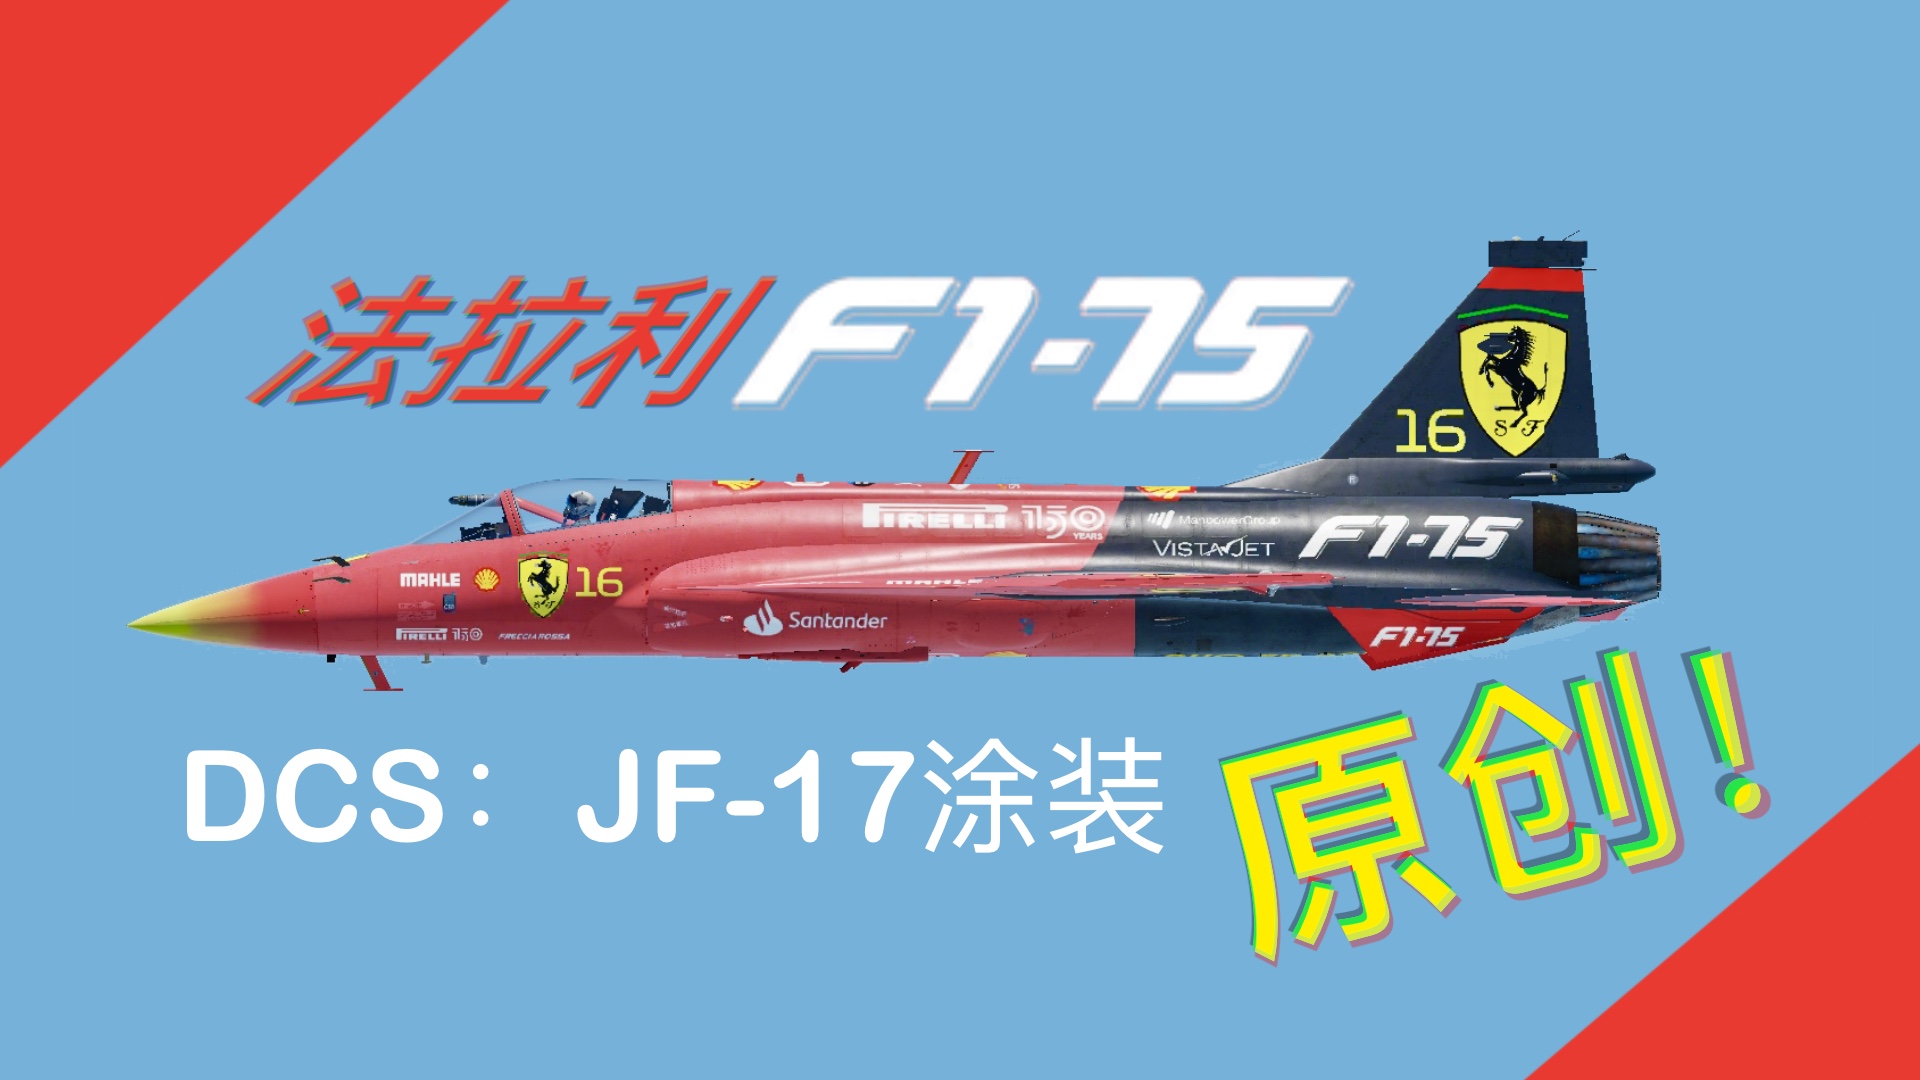 Ferrari F1-75 livery for JF-17